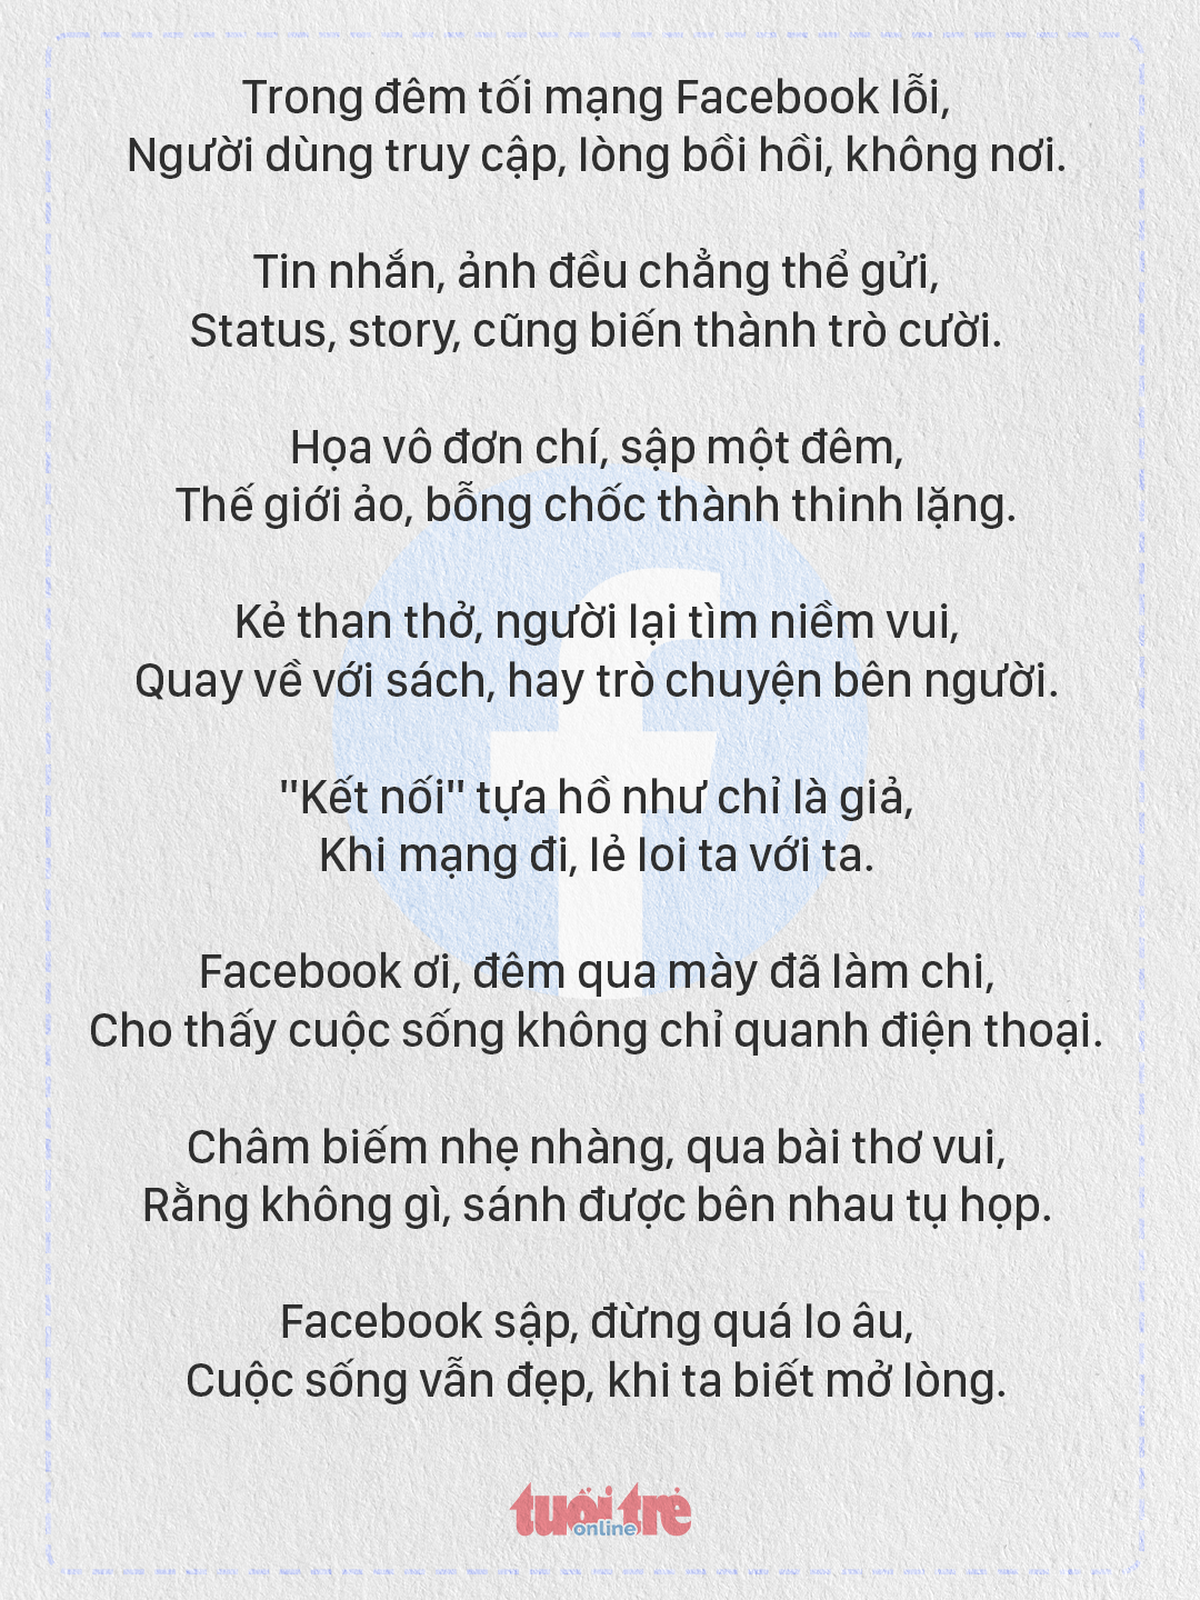 AI làm thơ: Facebook sập cuộc đời ta vẫn đẹp